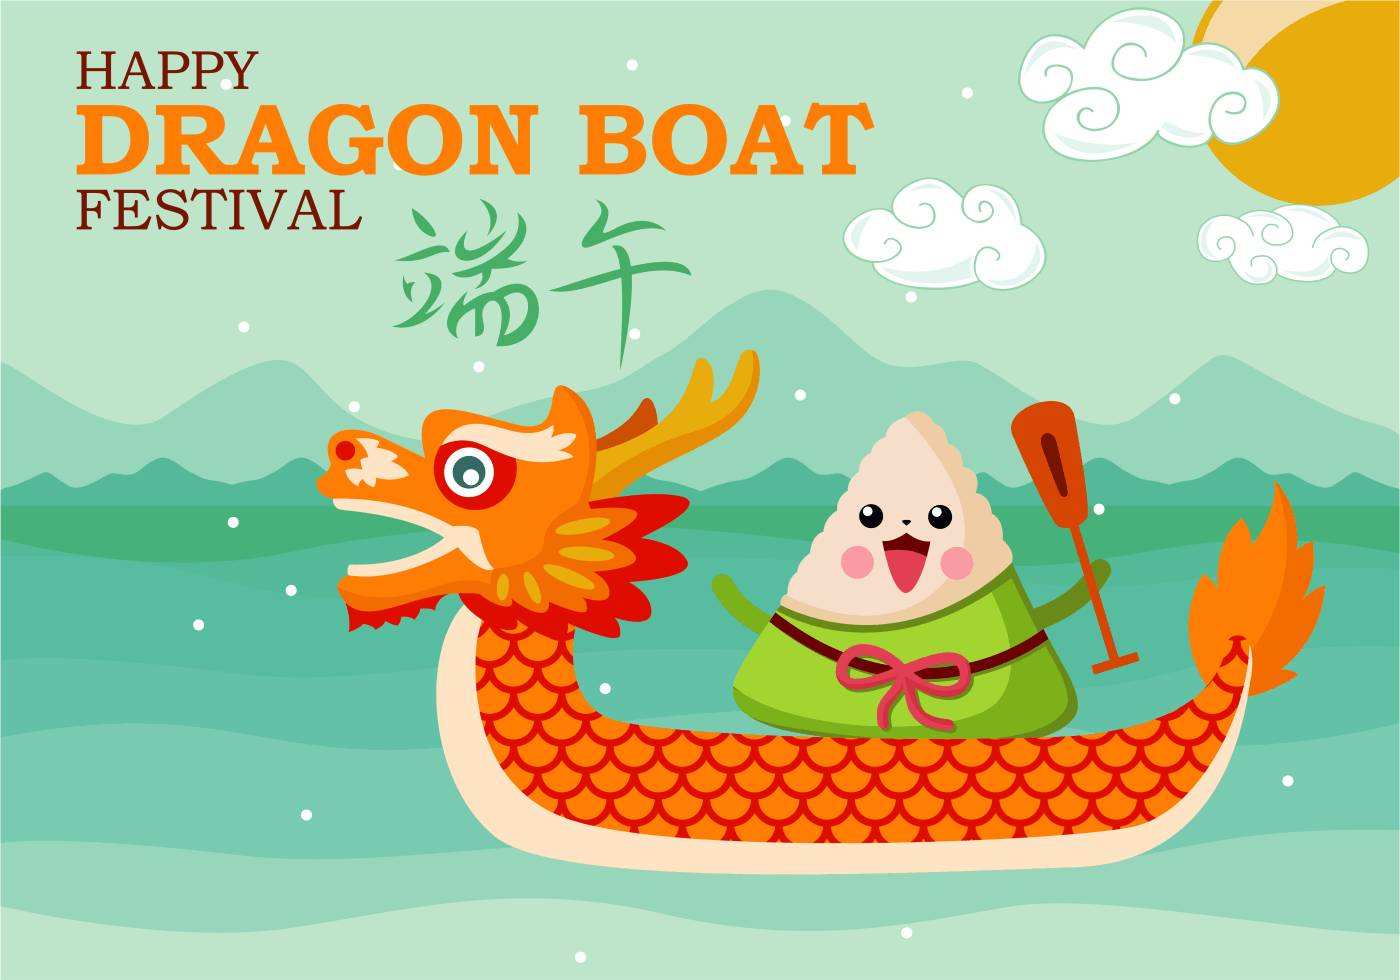 Festival del Bote del Dragón. 25 de junio de 2020.